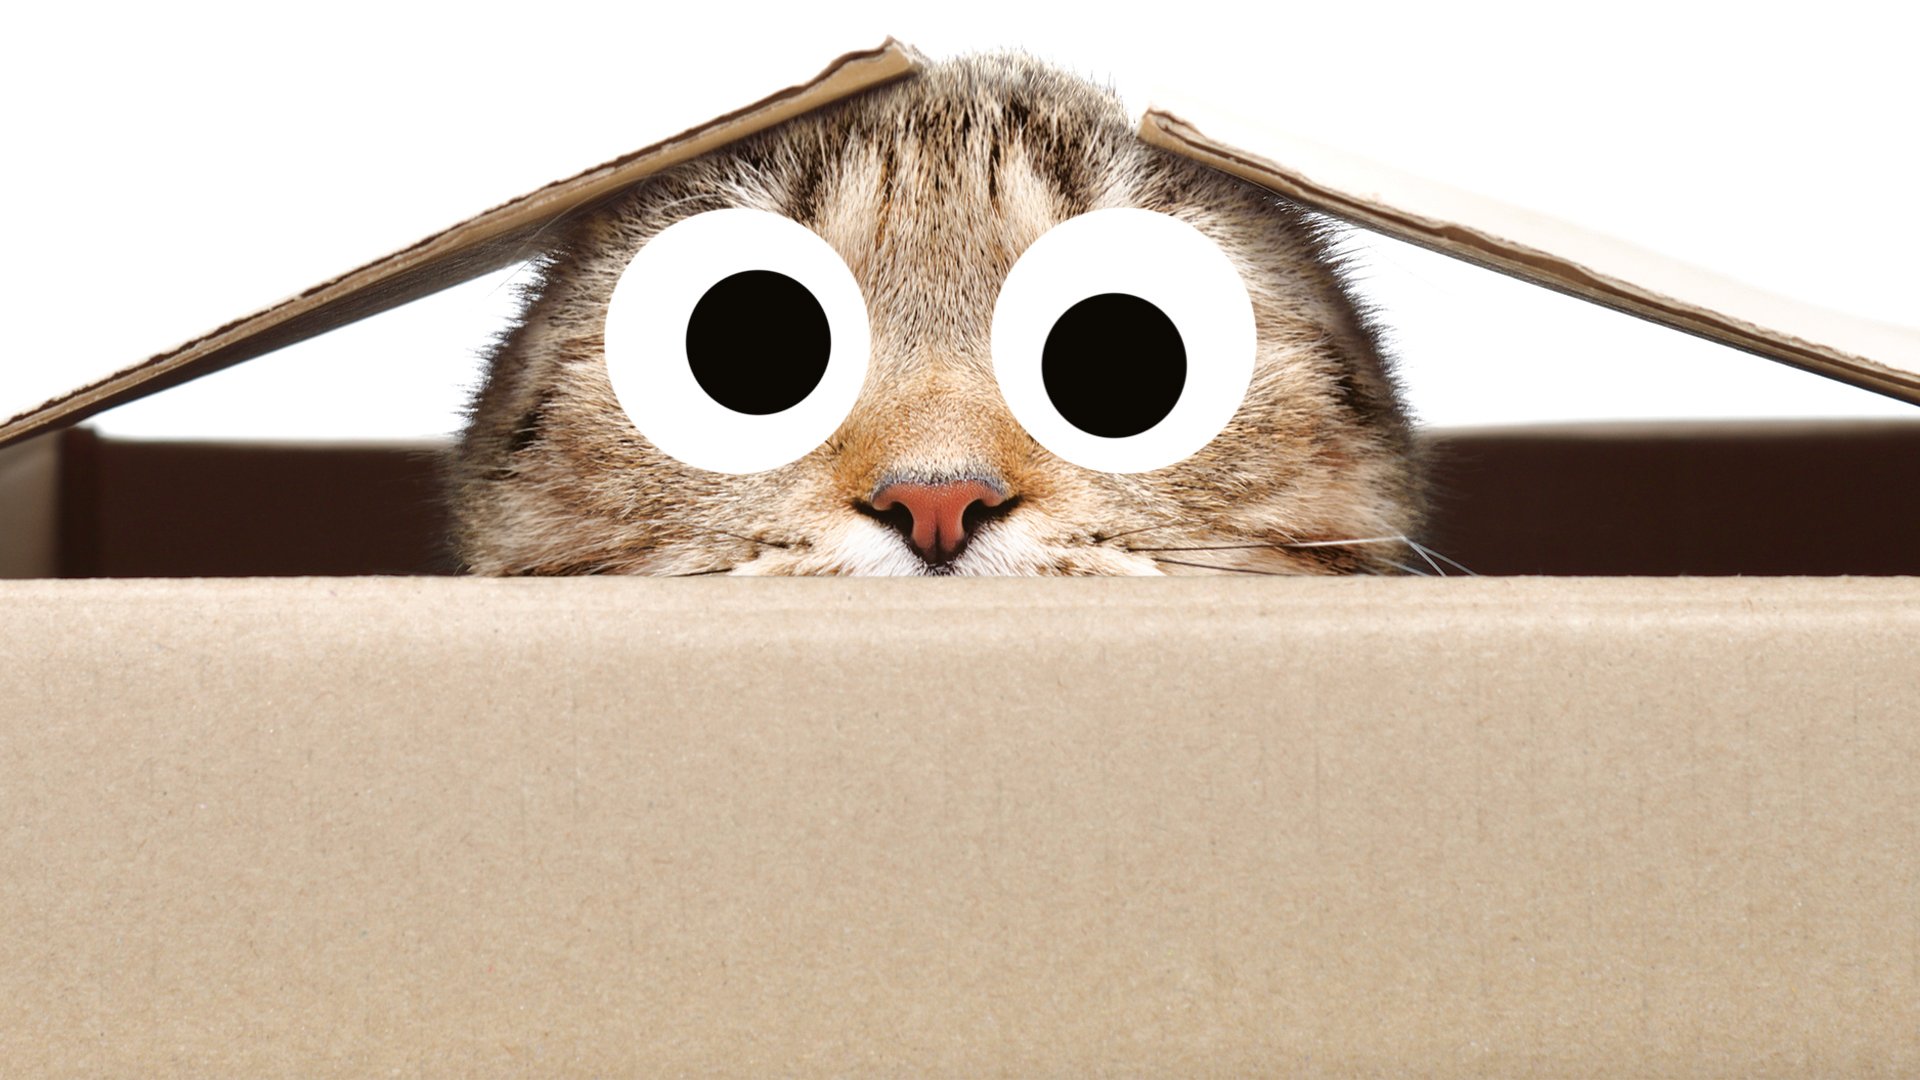 A cat in a box